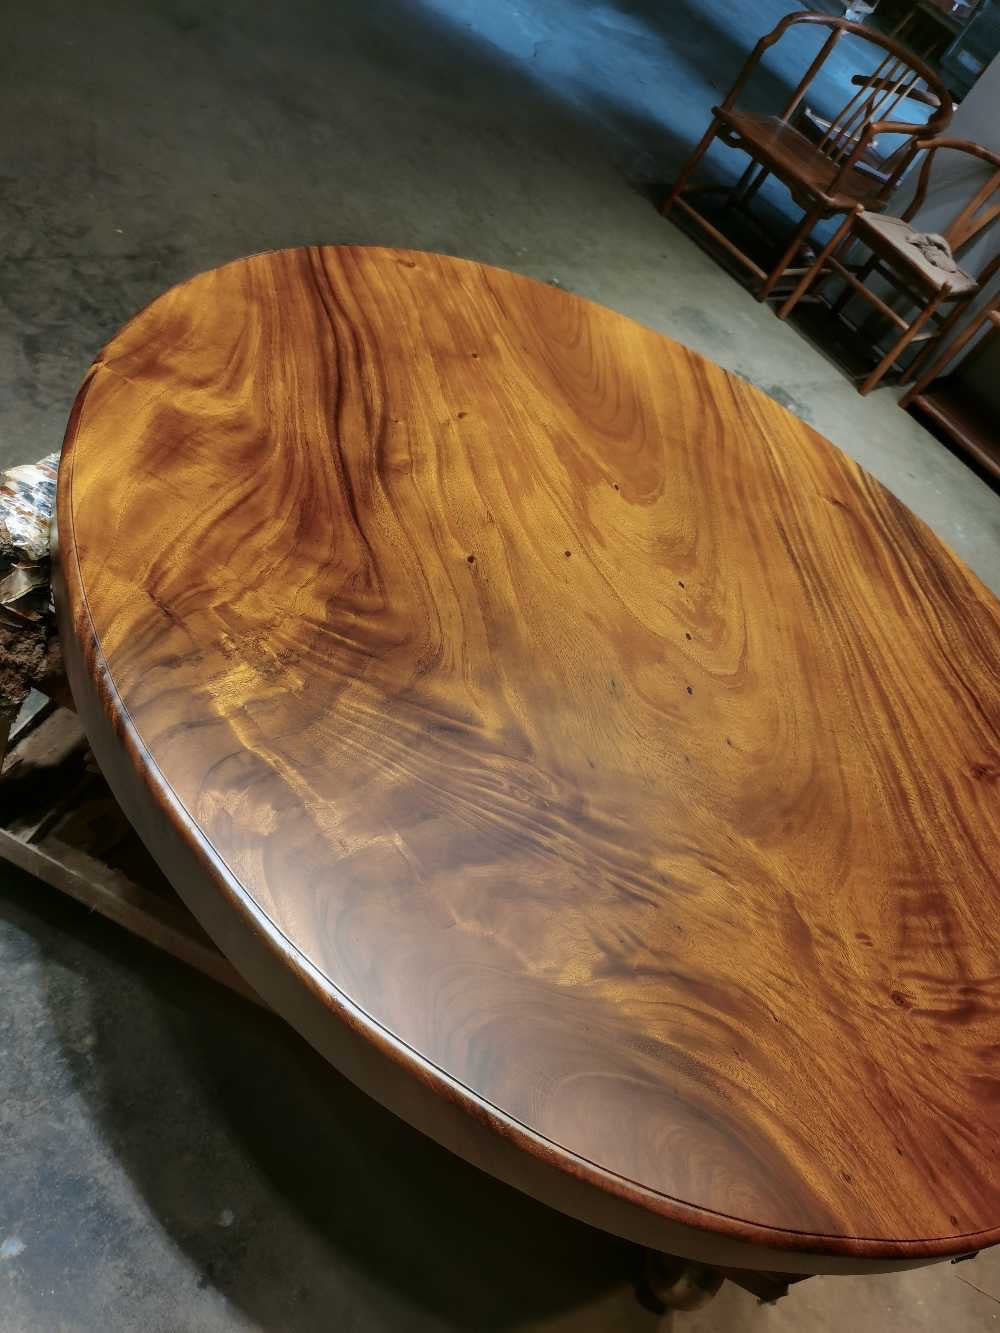 طاولة مستديرة من الخشب الخام، وليس طاولة مستديرة من خشب البلوط، وأسطح طاولات مستديرة من الخشب غير المكتمل، وطاولة مستديرة من الخشب ذو الحافة الحية